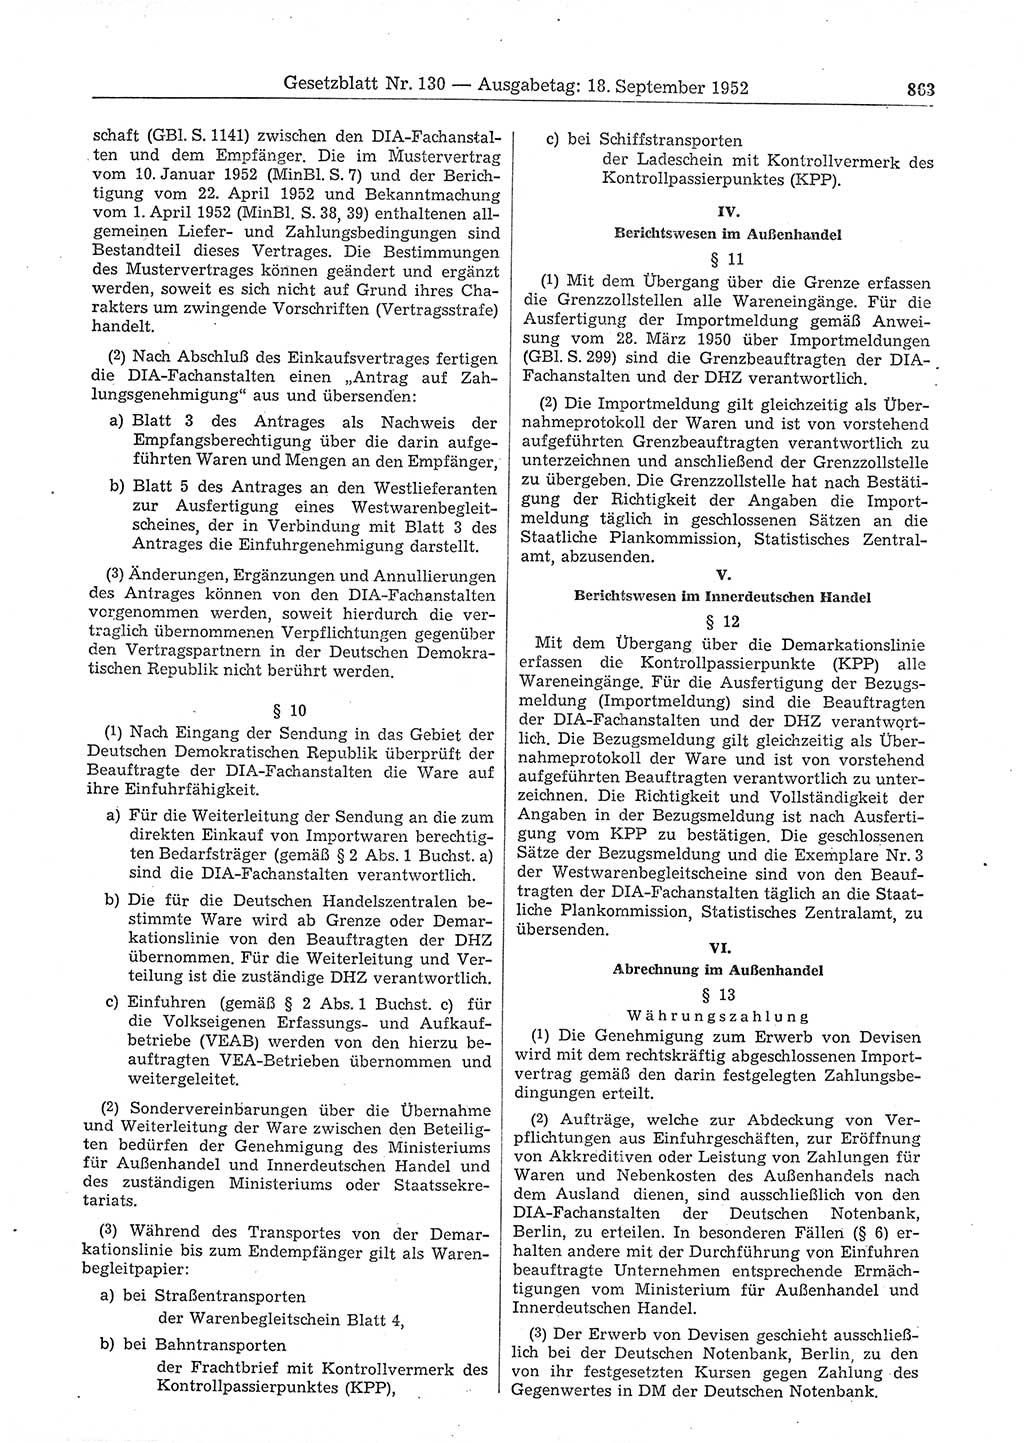 Gesetzblatt (GBl.) der Deutschen Demokratischen Republik (DDR) 1952, Seite 863 (GBl. DDR 1952, S. 863)